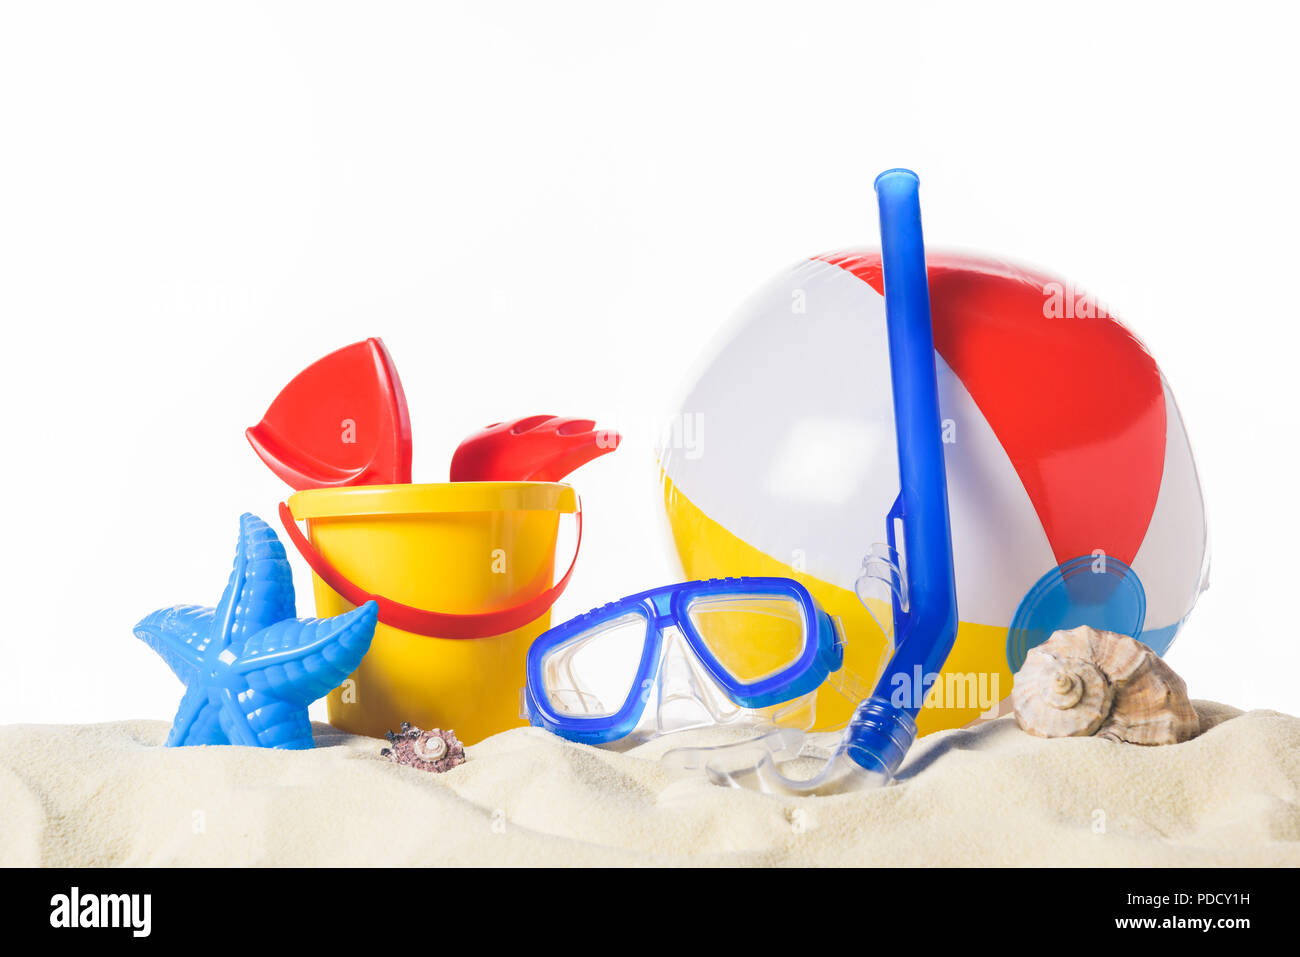 Masque de plongée avec ballon de plage et des jouets dans le sable isolated on white Banque D'Images